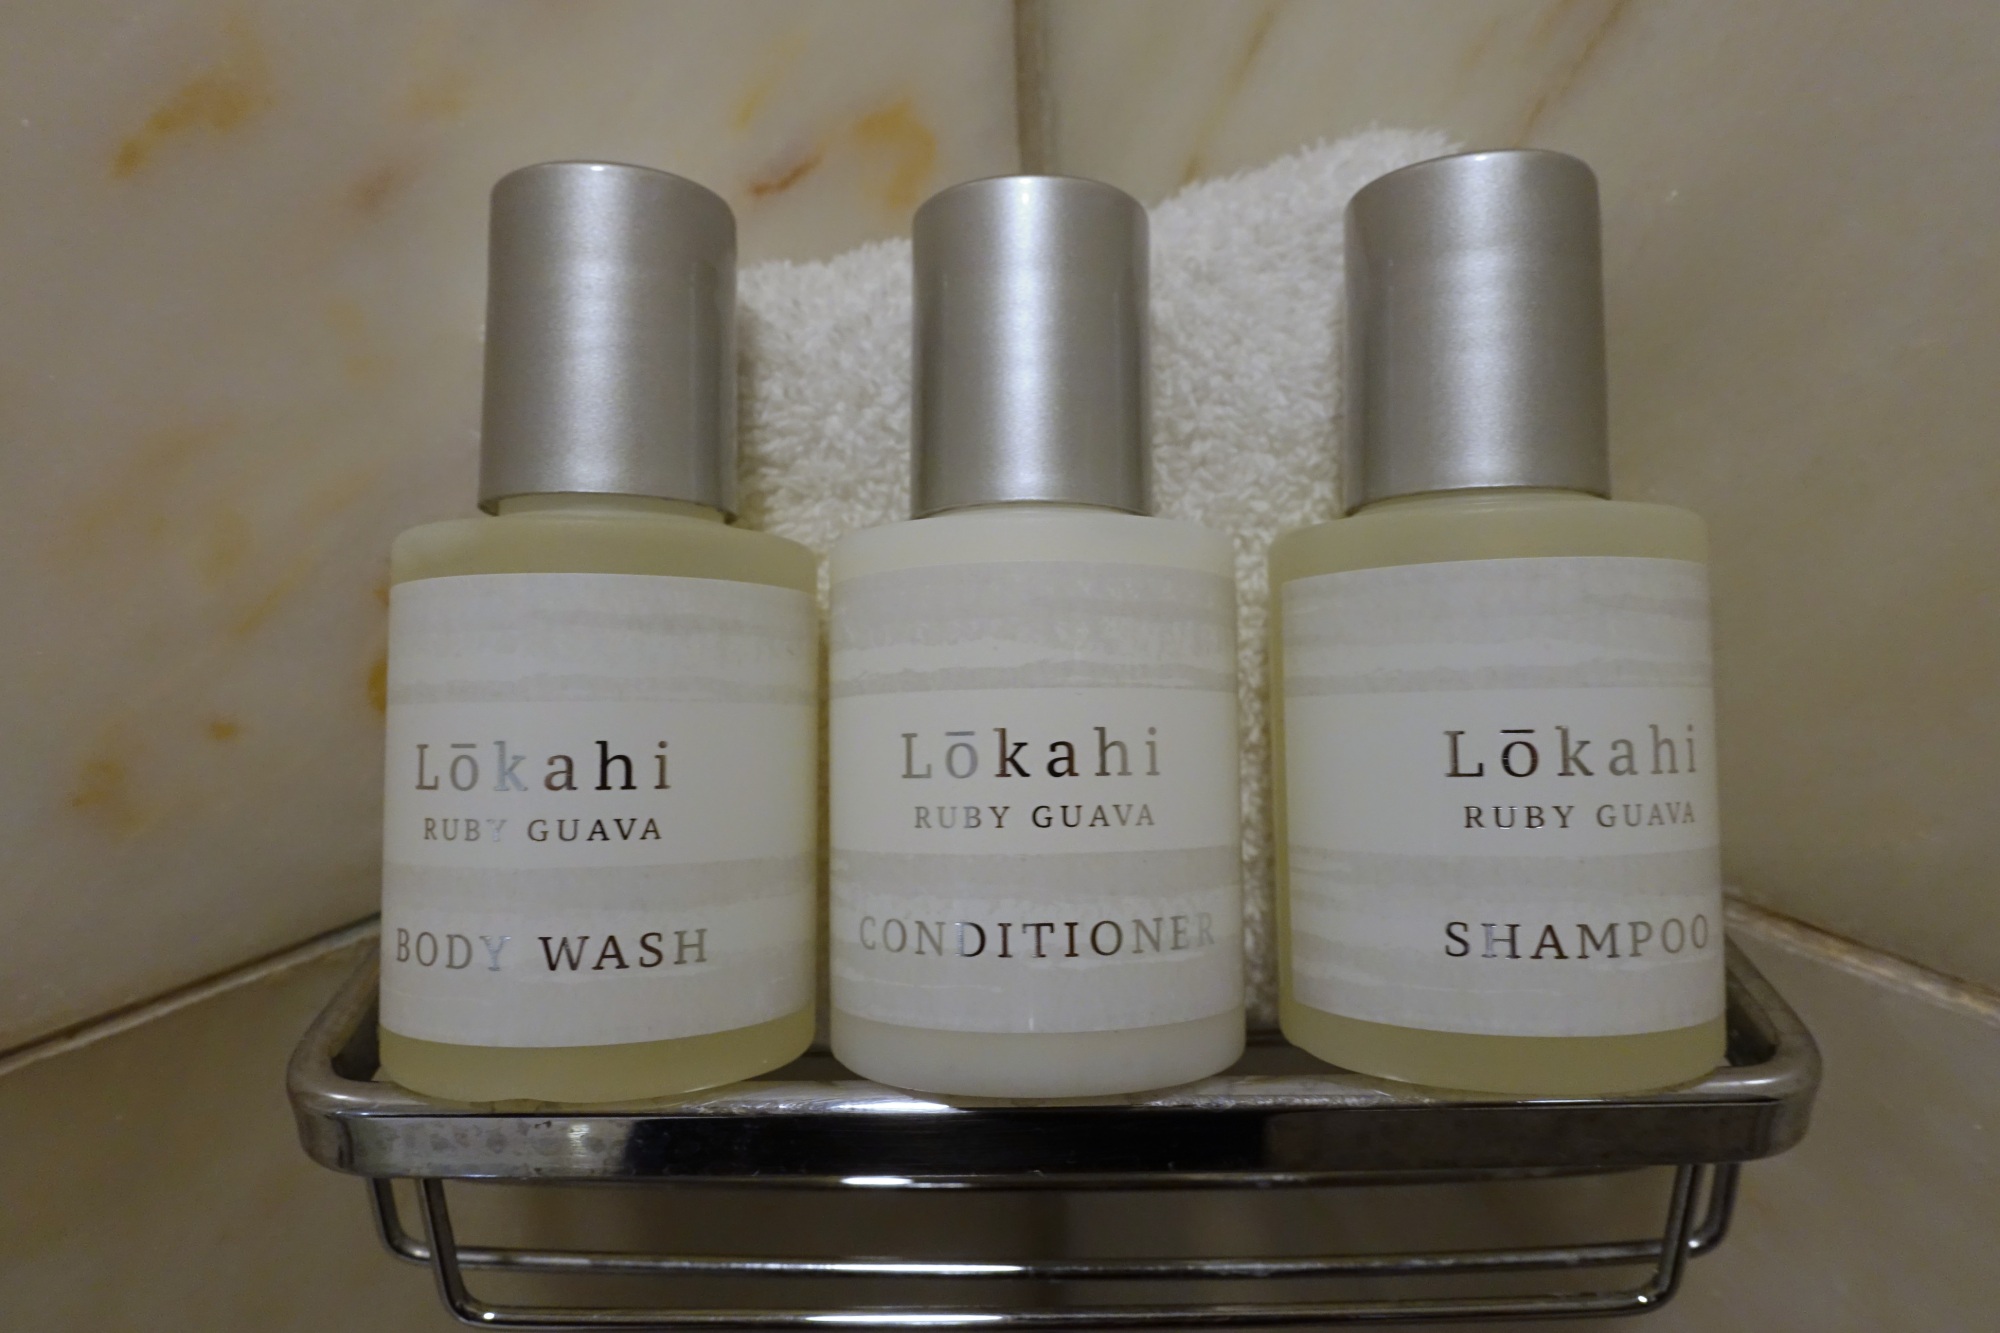 Lokahi Bath Products, Four Seasons Maui Review